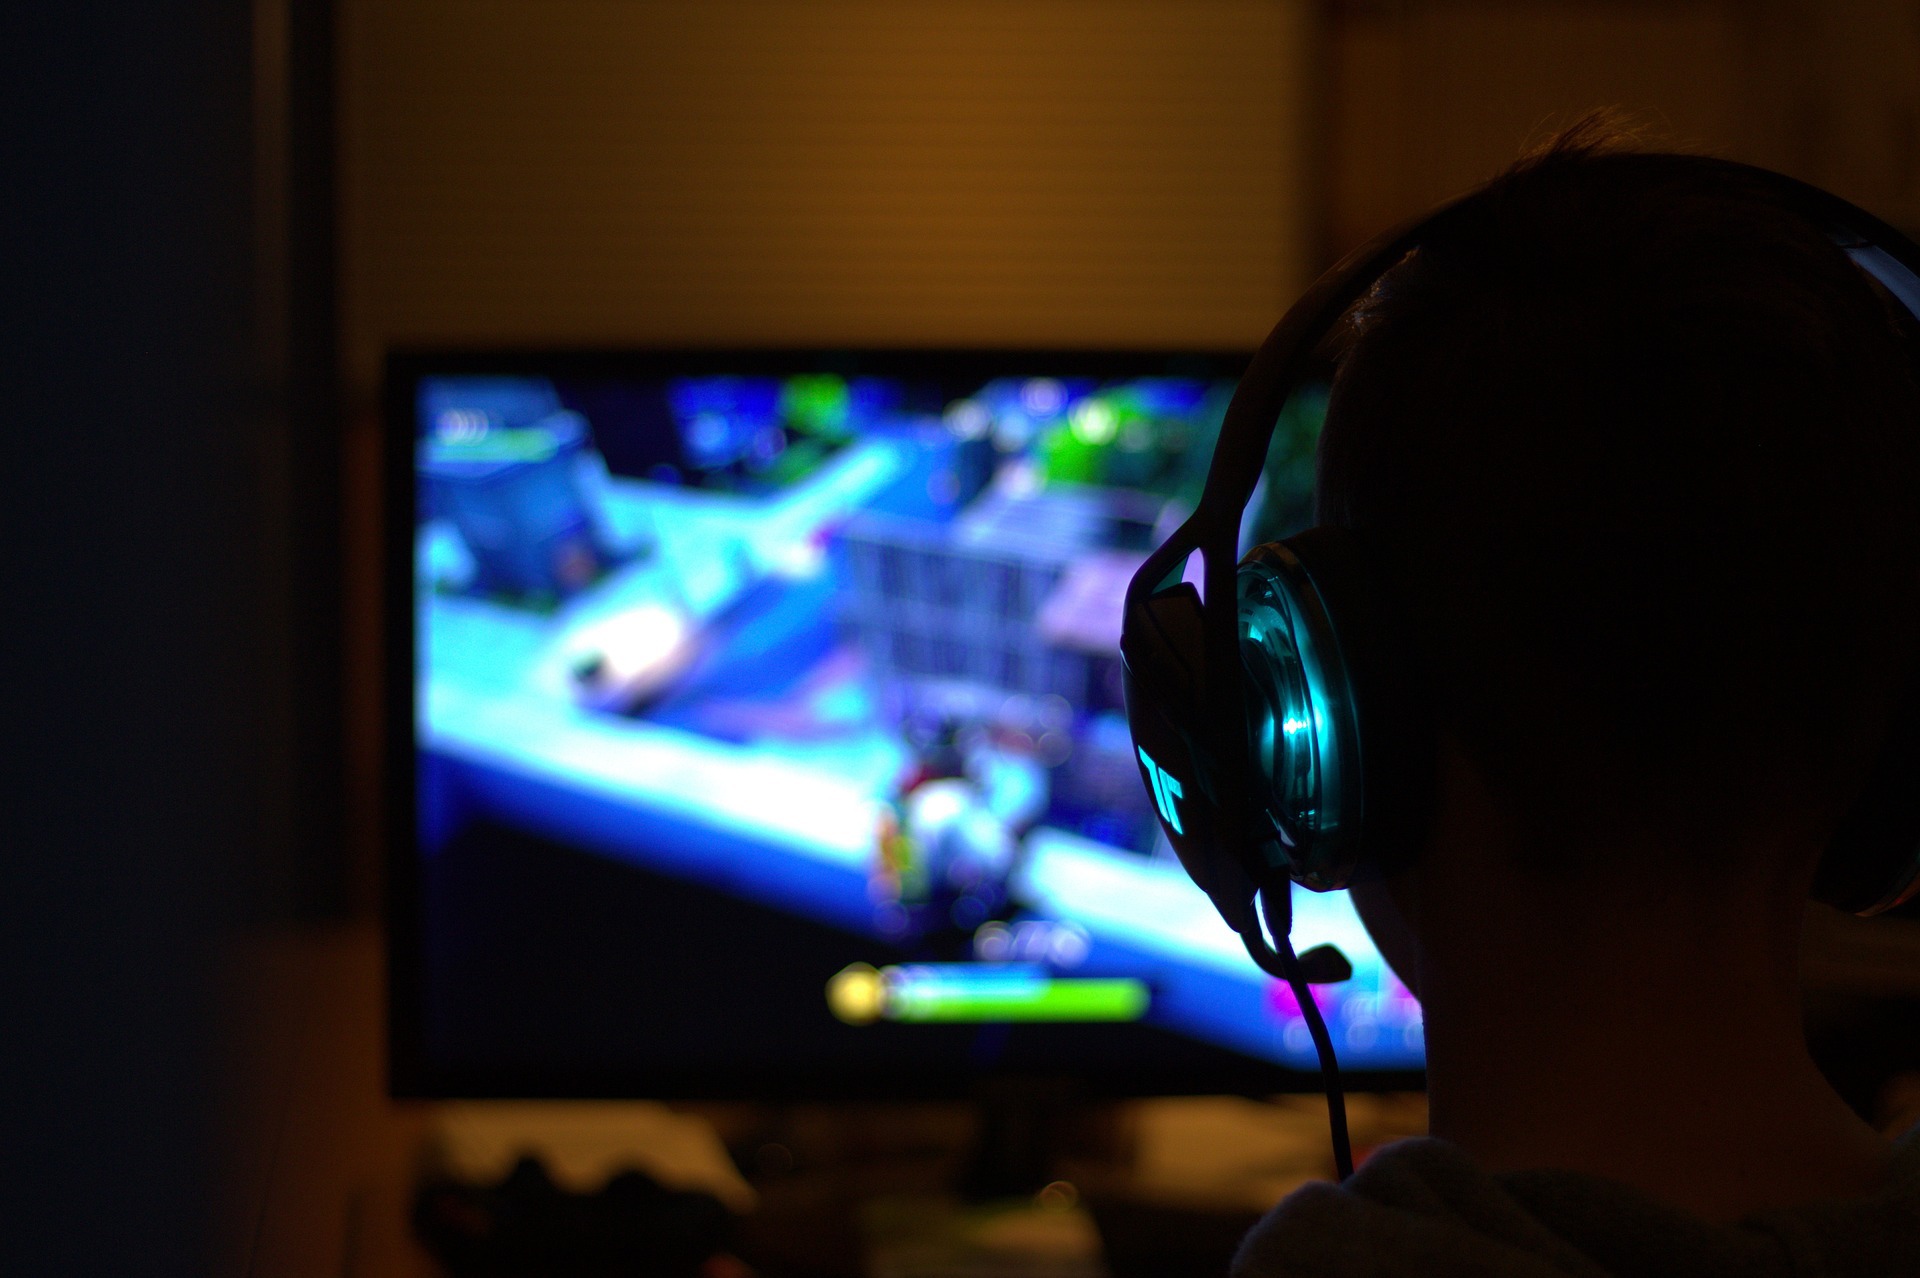 Des jeux vidéo comme Fortnite, très populaire actuellement, développeraient les fonctions cognitives des joueurs. (Illustration)